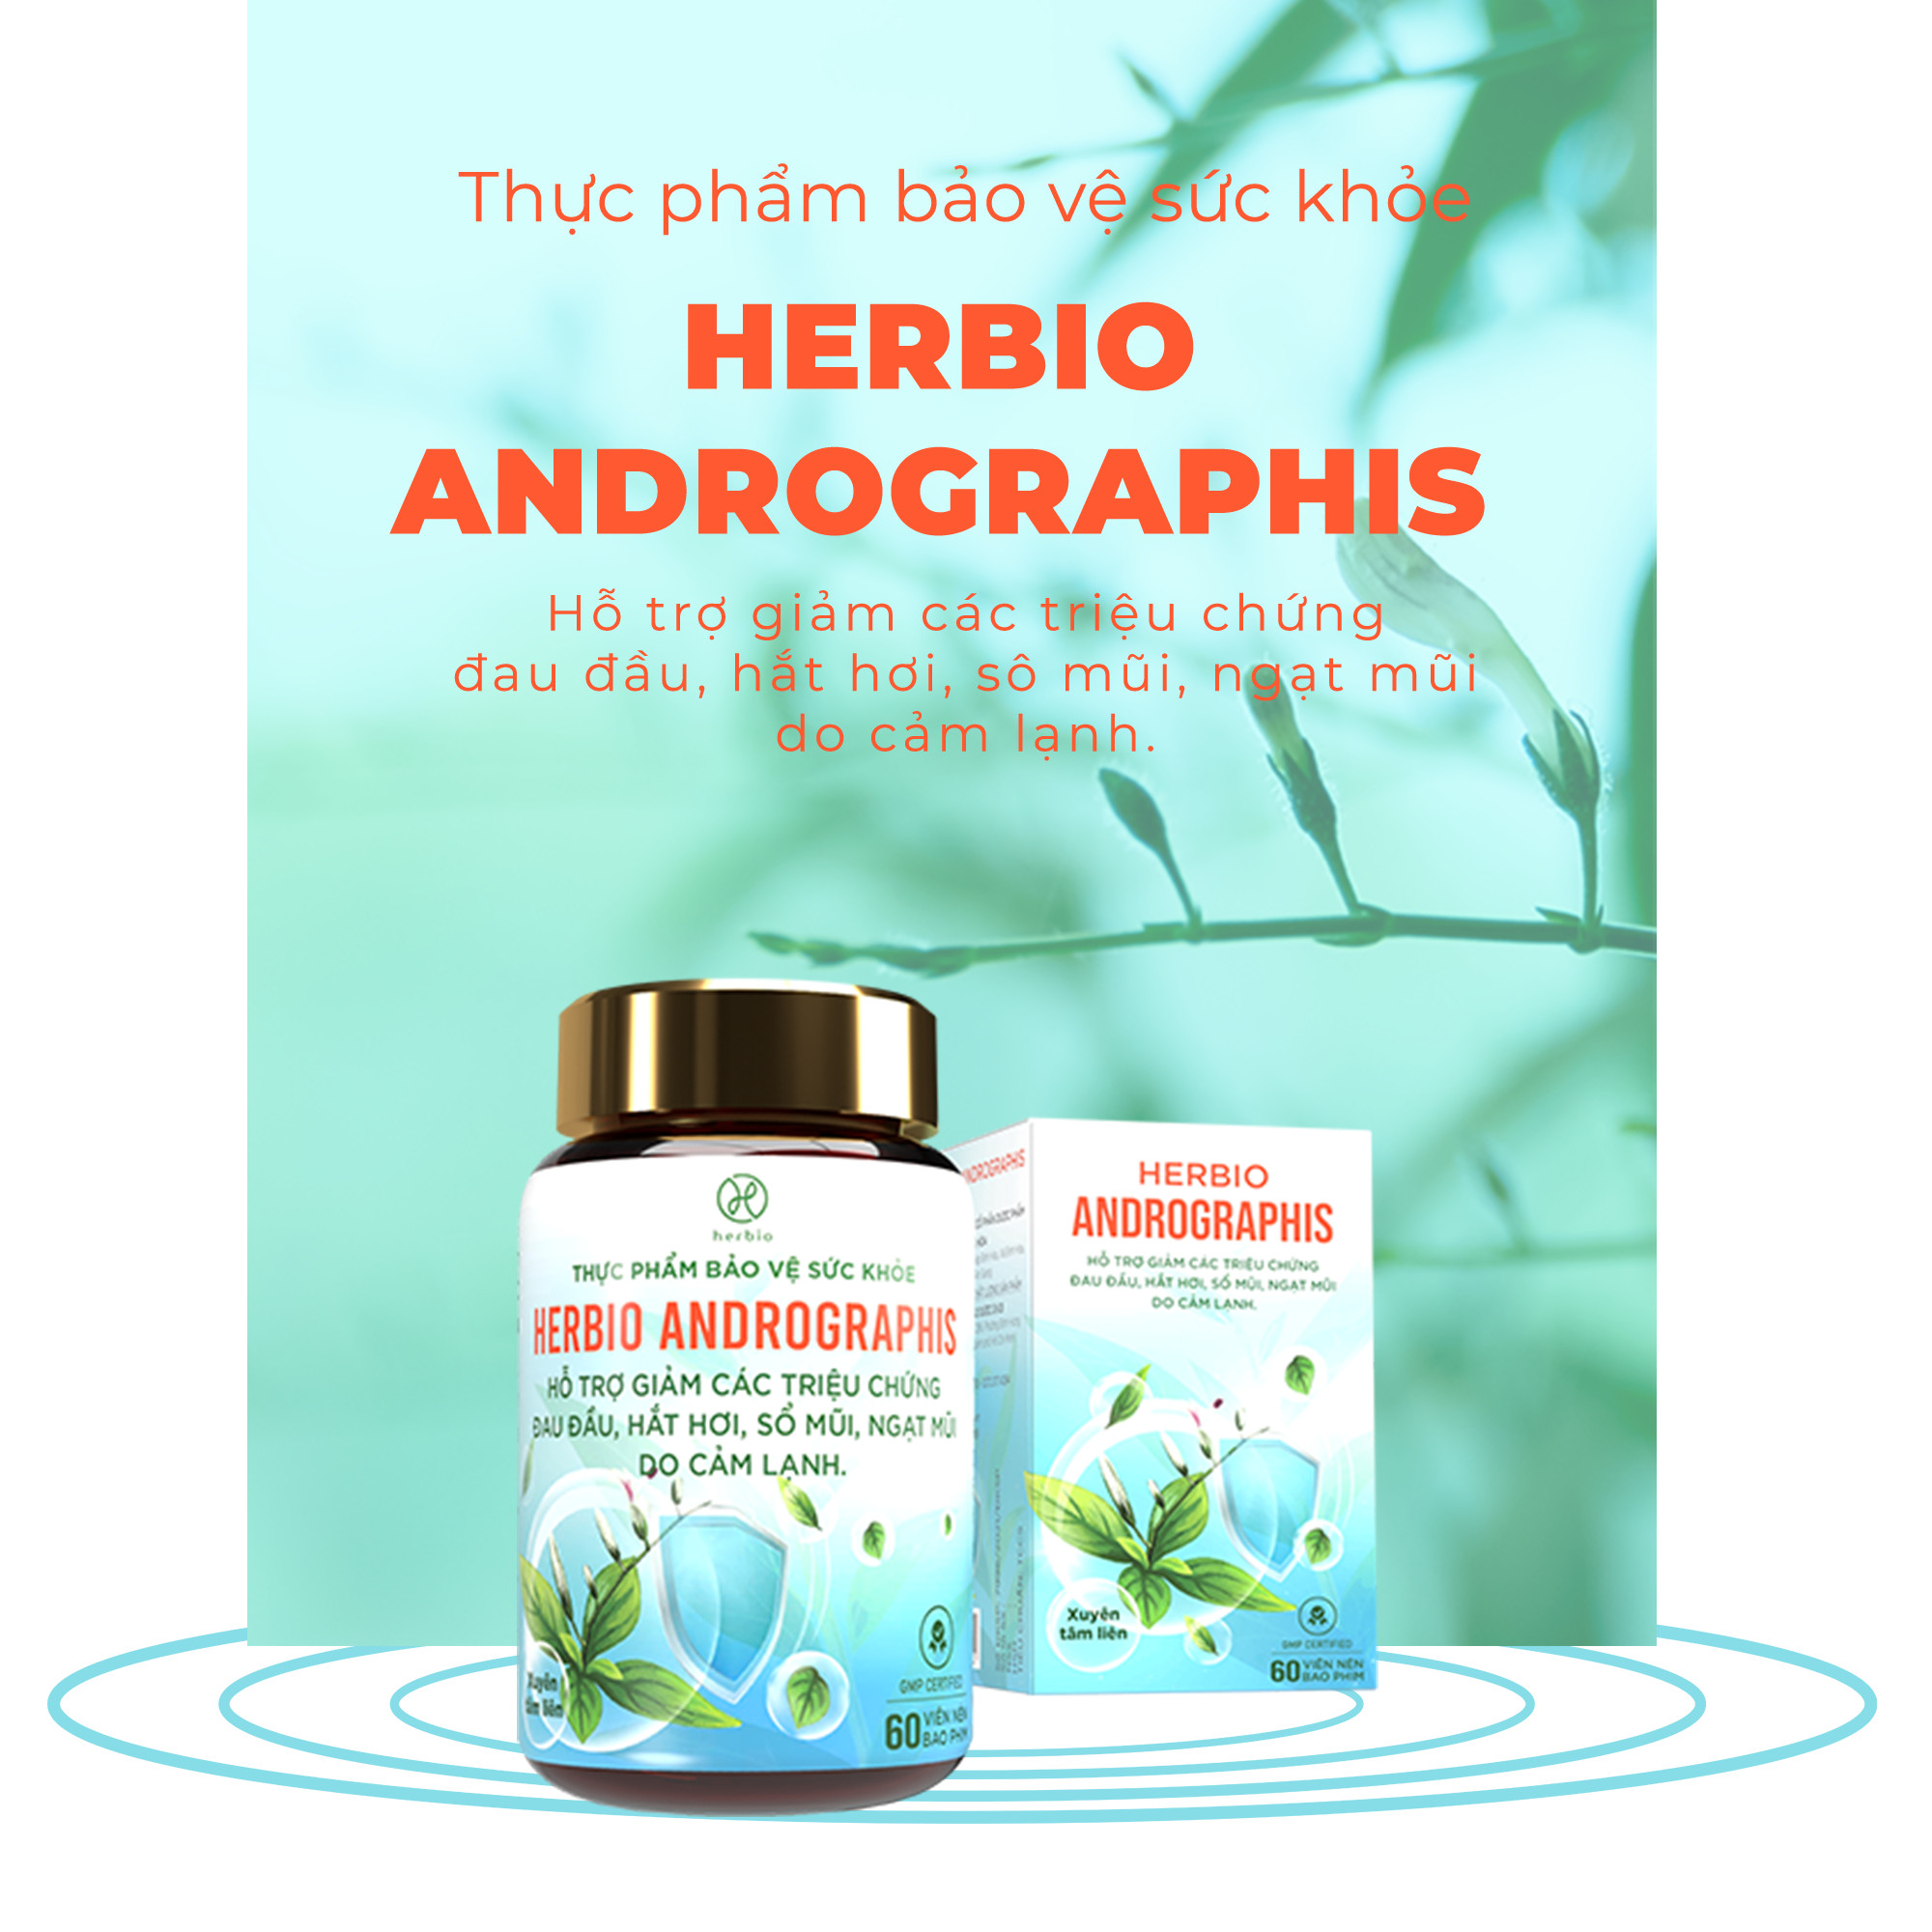 Viên uống thảo dược Herbio Andrographis - kết hợp Xuyên Tâm Liên và Vitamin C tăng cường đề kháng, hỗ trợ giảm các triệu chứng đau đầu, hắc hơi, sổ mũi, ngạt mũi do cảm lạnh - Hộp 01 Lọ x 60 viên